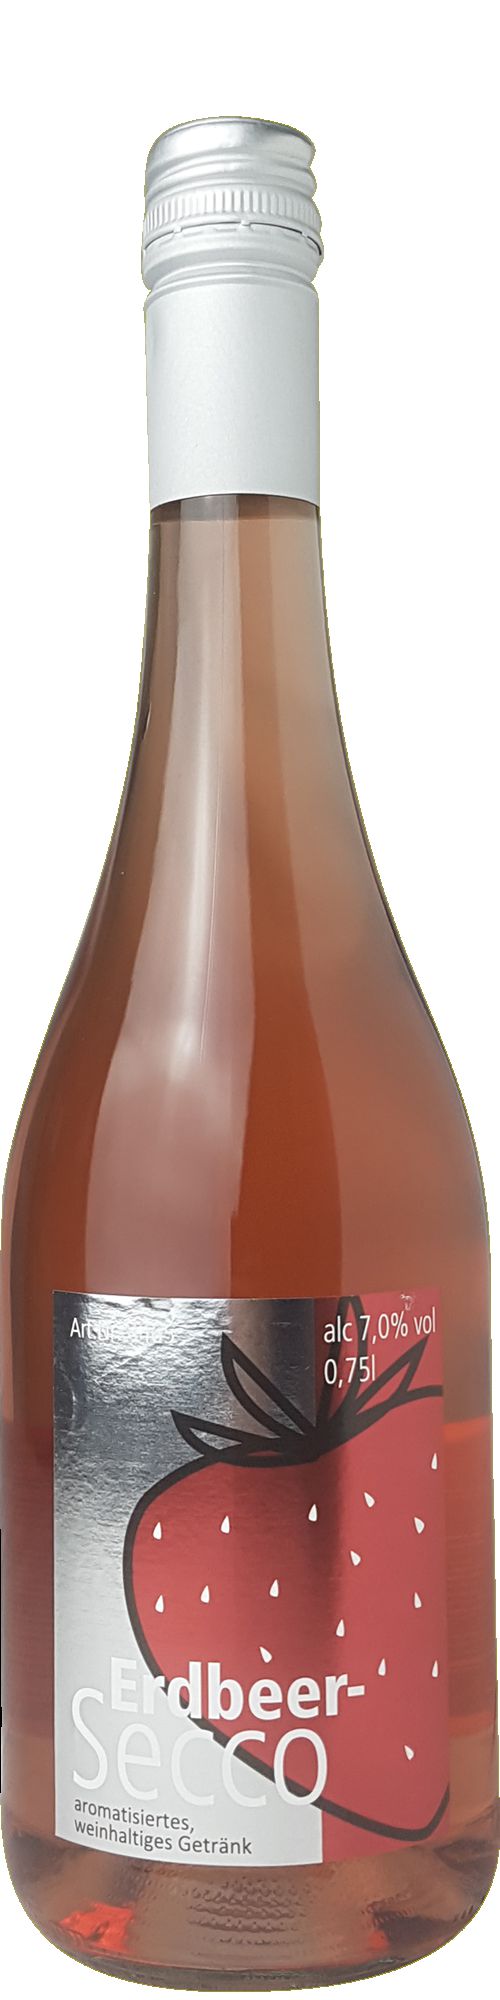 Erdbeer-Secco, aromatisiertes, weinhaltiges Getränk